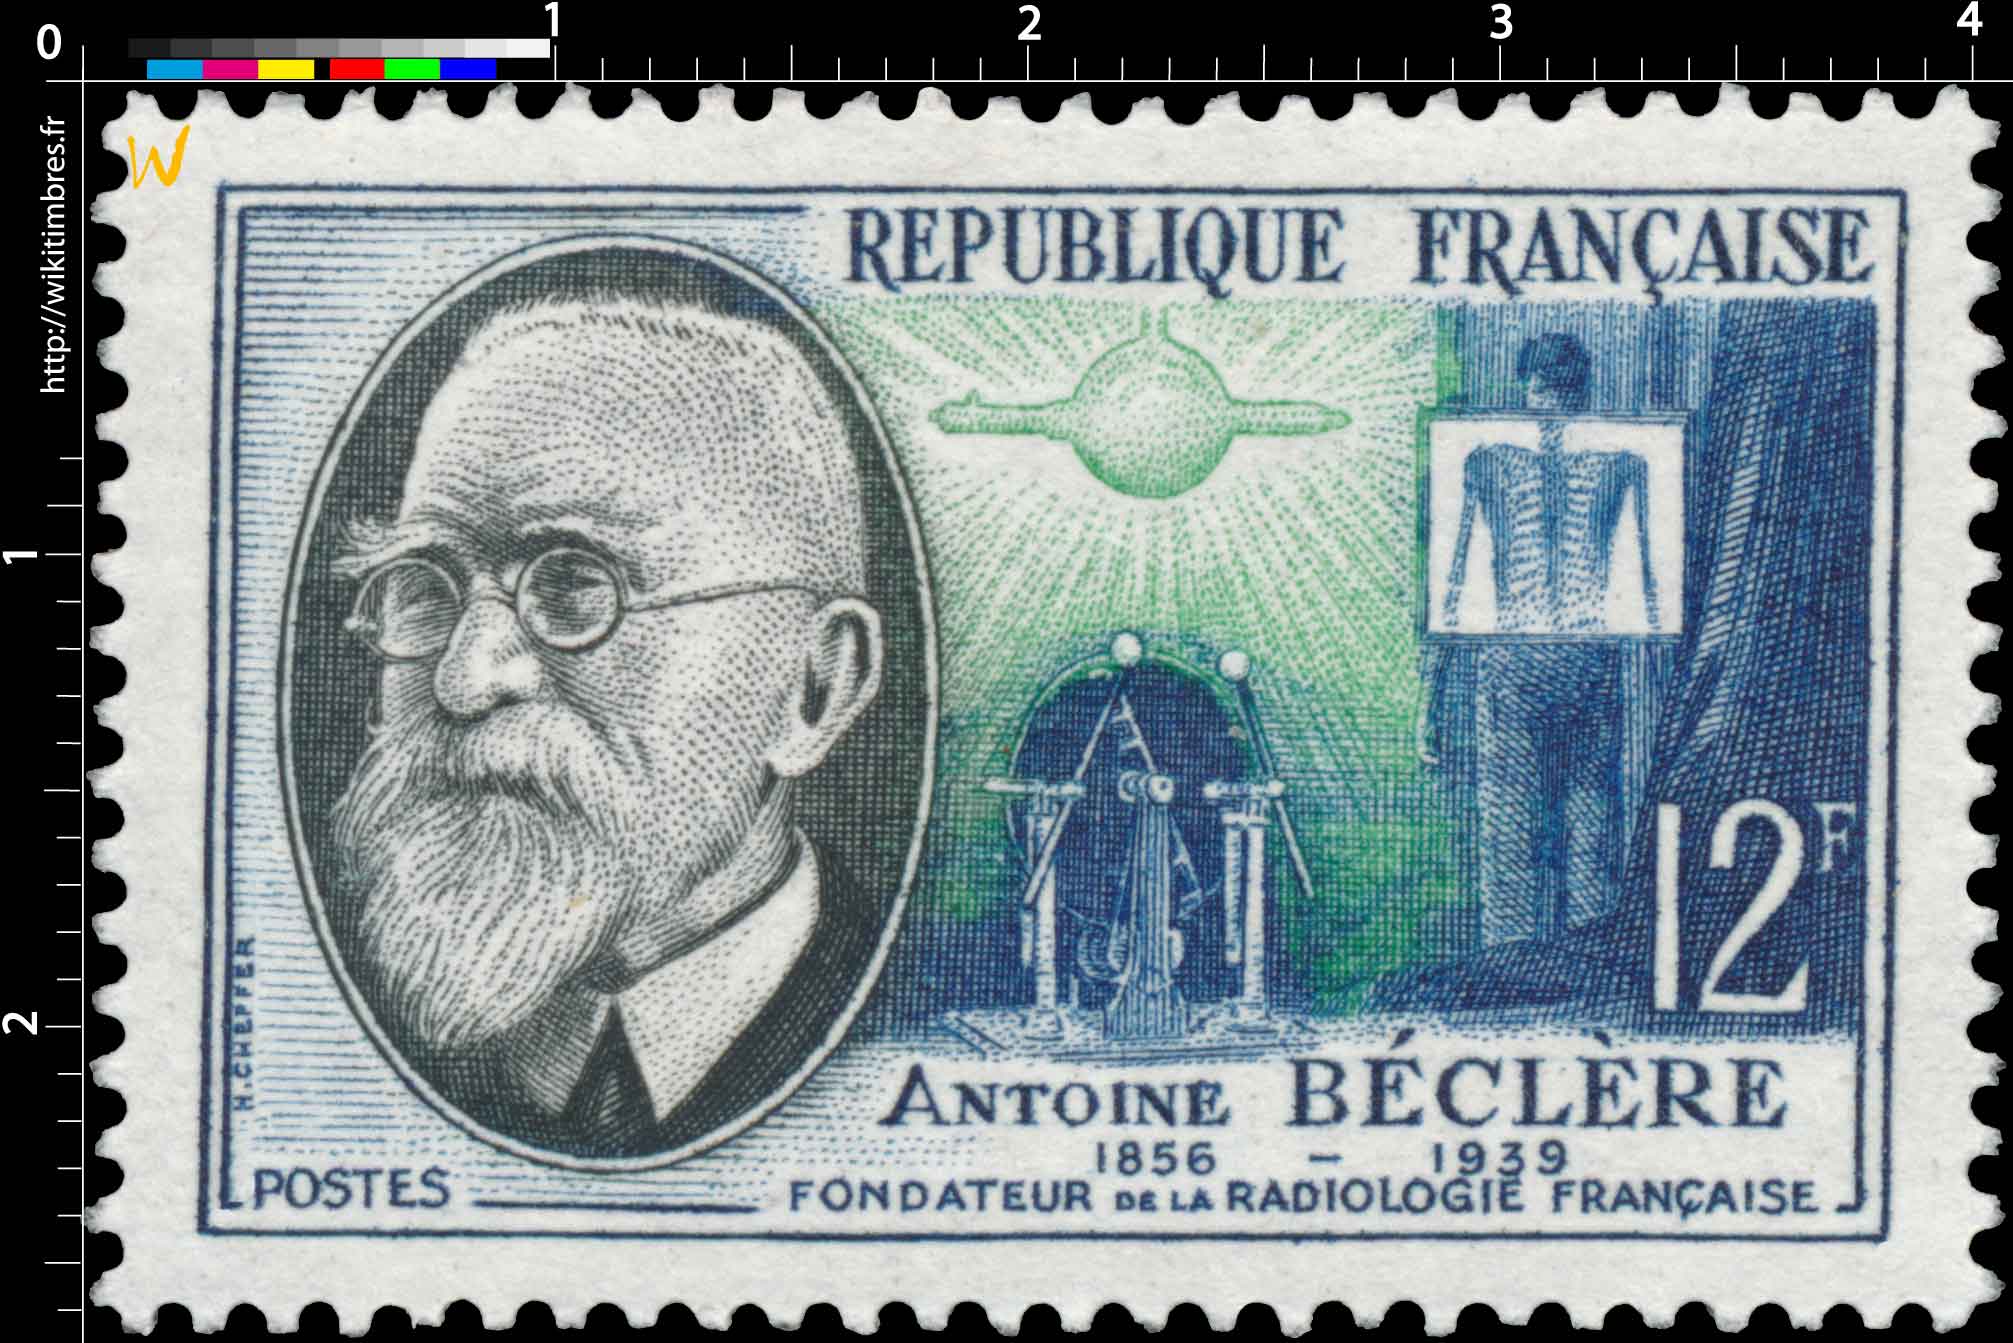 ANTOINE BÉCLÈRE 1856-1939 FONDATEUR DE LA RADIOLOGIE FRANÇAISE